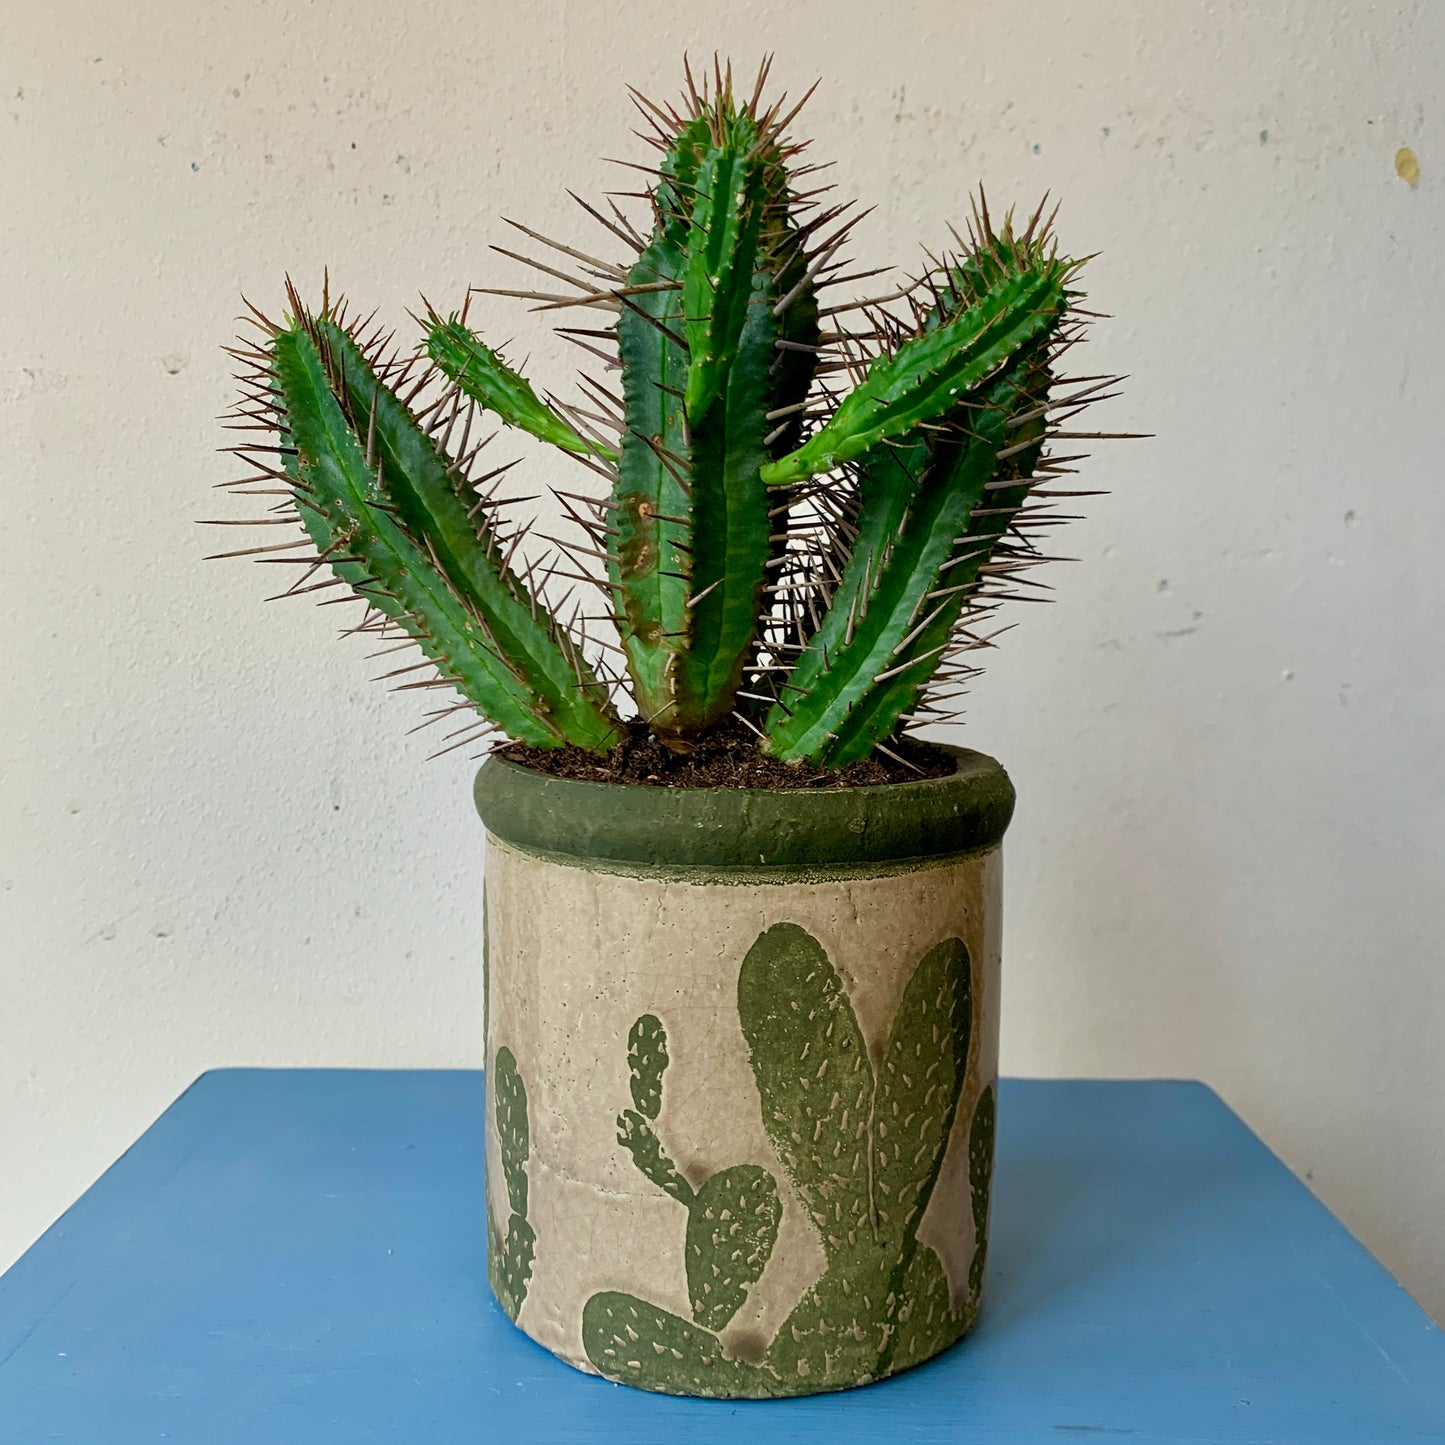 Good Luck Cactus in a Cactus Pot